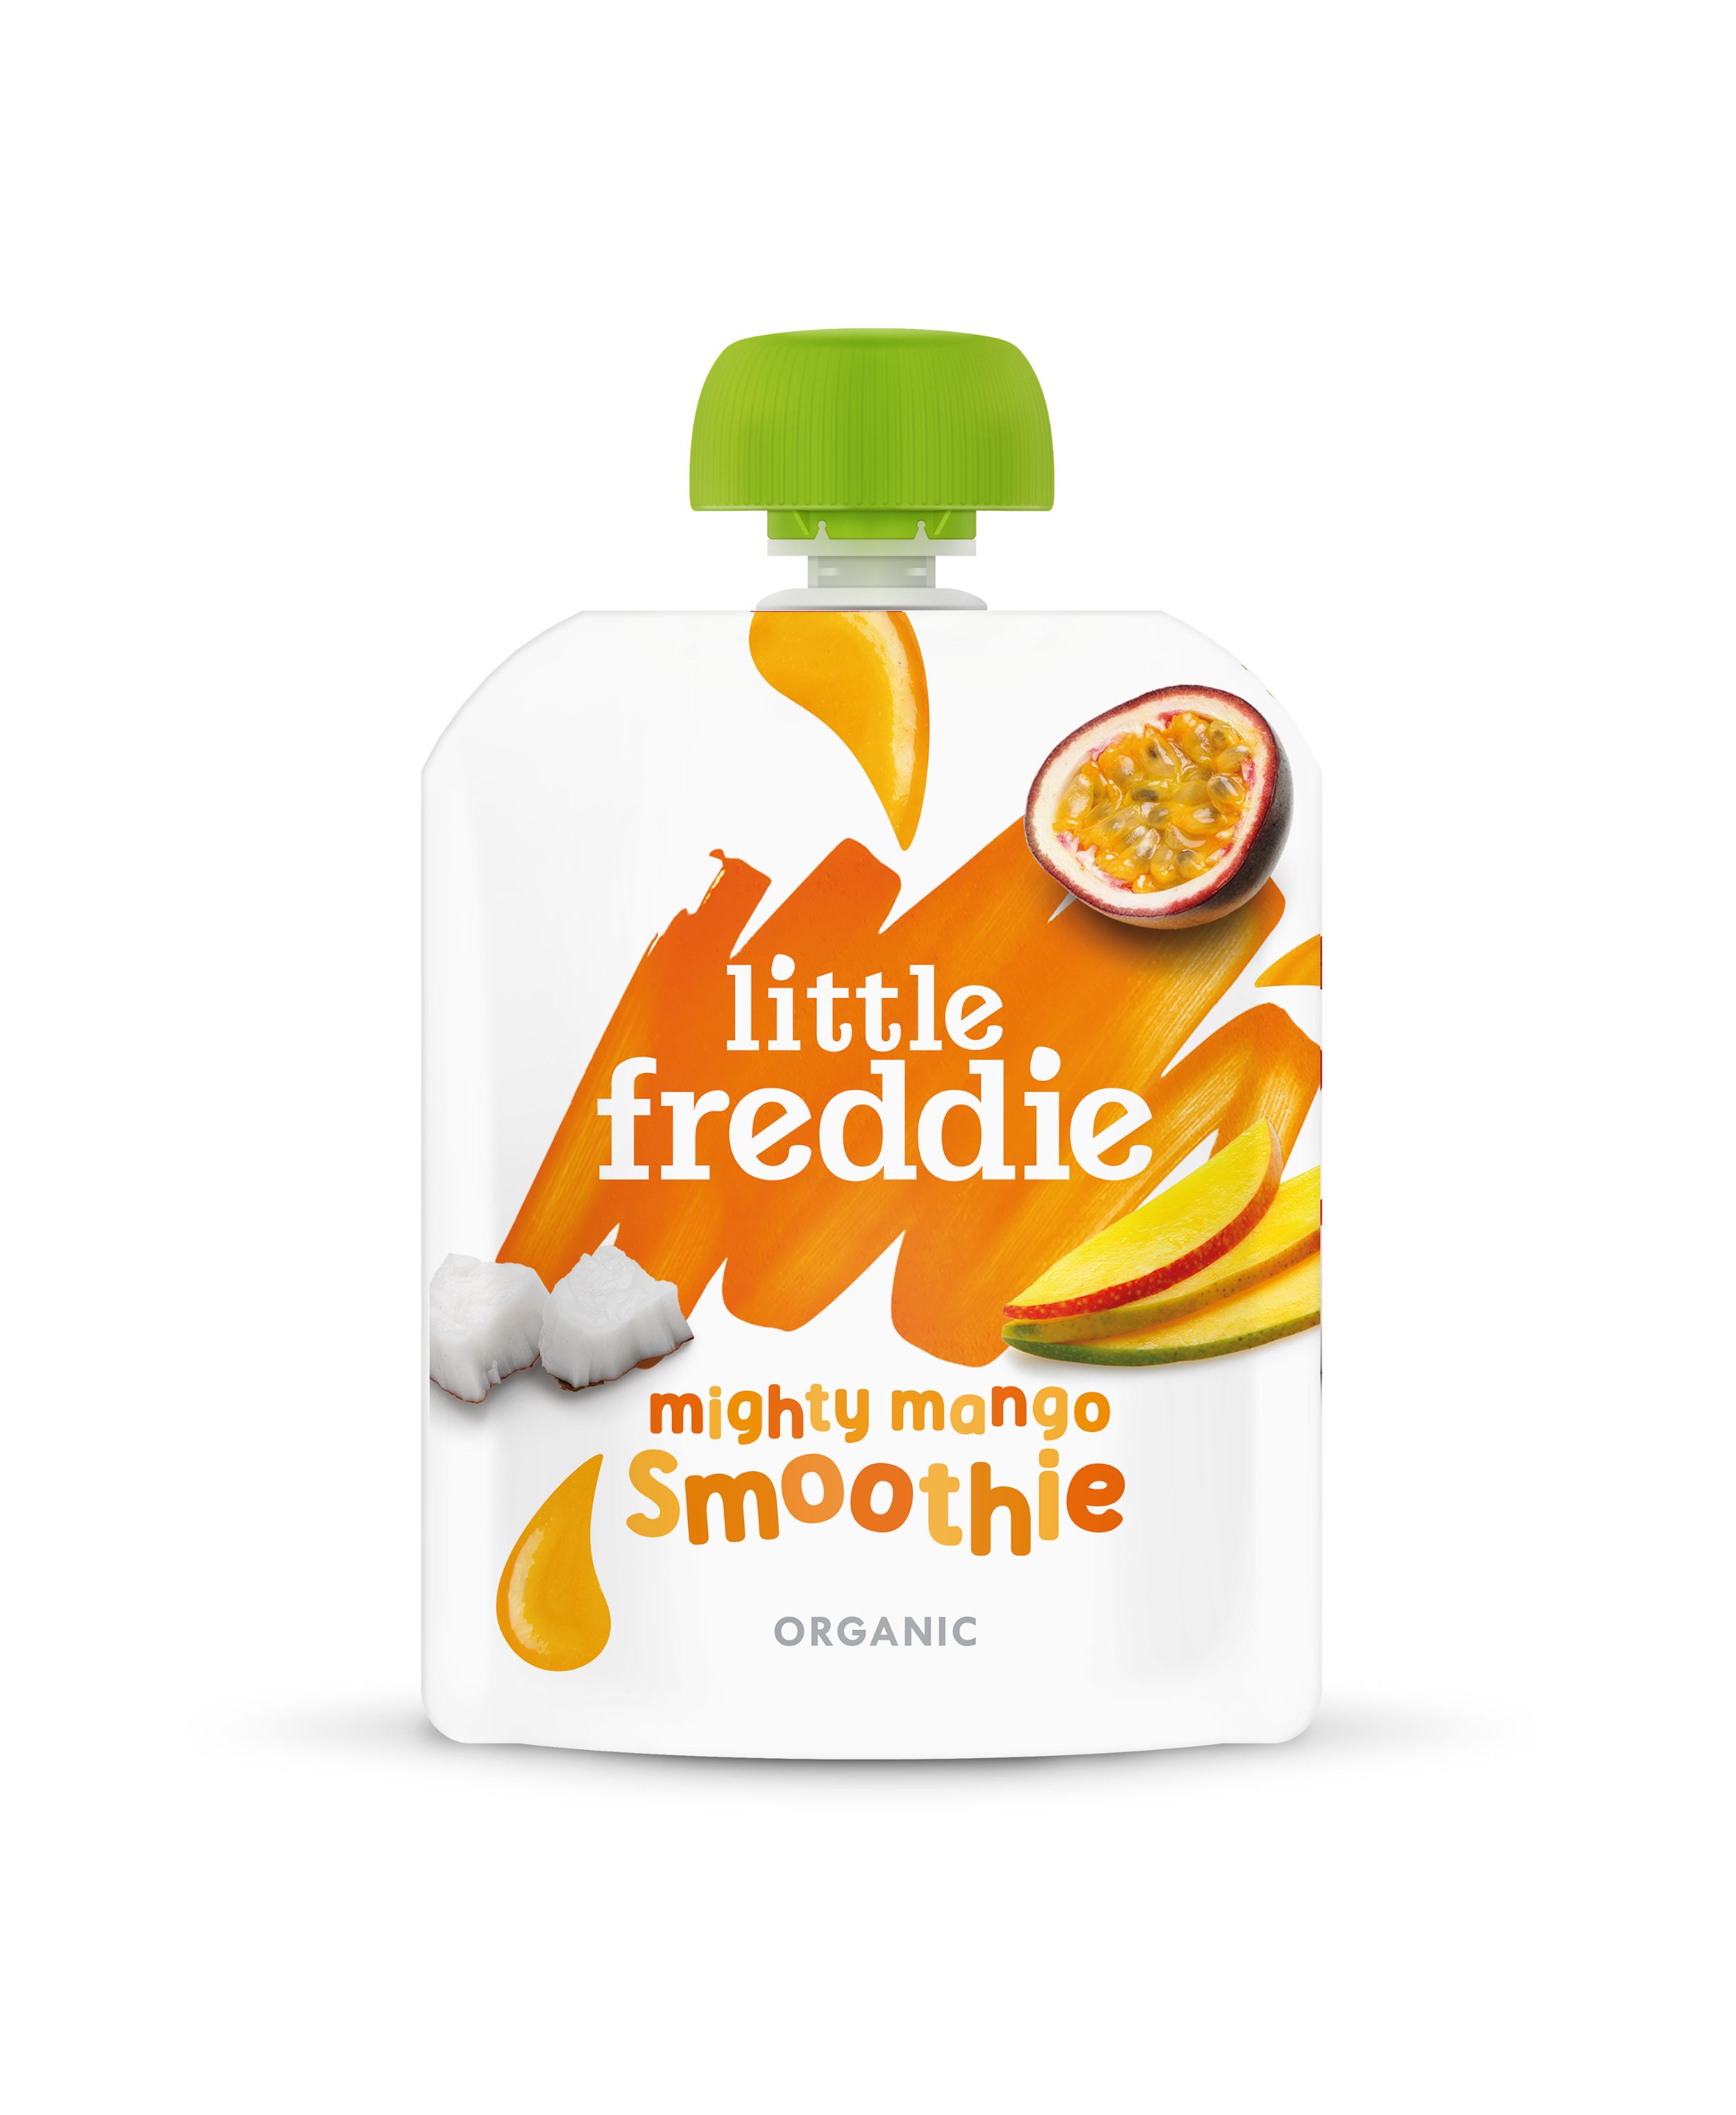 Little Freddie Mighty Mango Smoothie - 90g